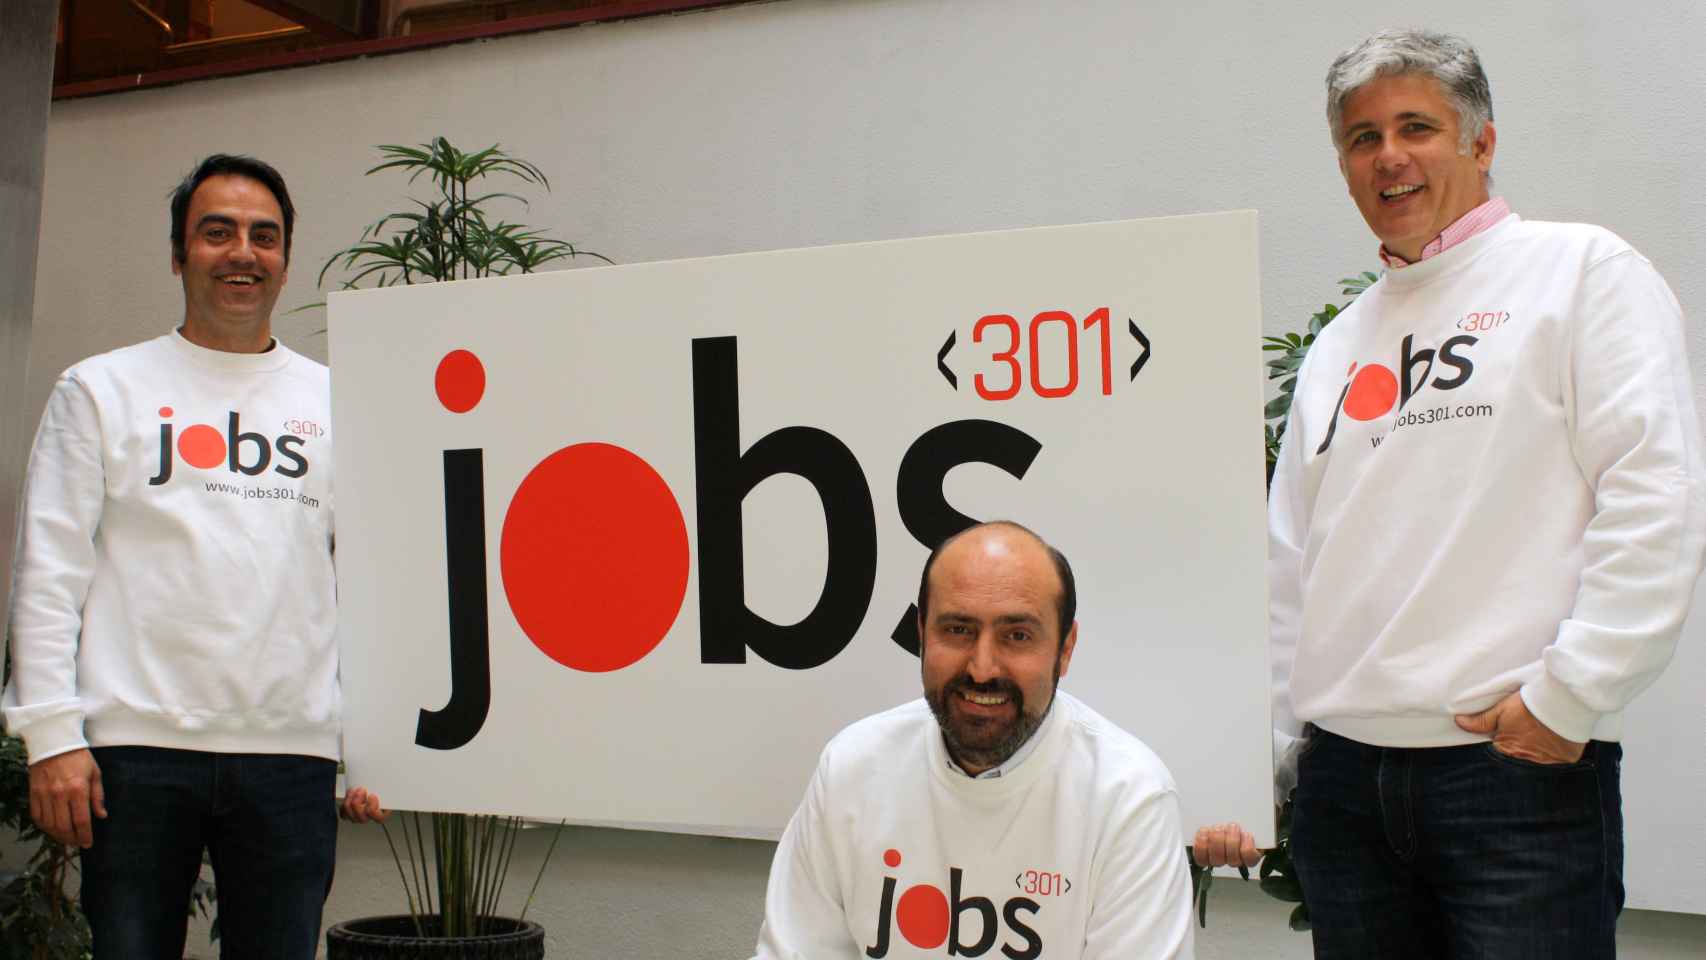 De izquierda a derecha: Jesús Luna, responsable de la plataforma y cofundador; Borja Henríquez de Luna, responsable de Operaciones y cofundador, y Guillermo Vallejo, CEO y cofundador.